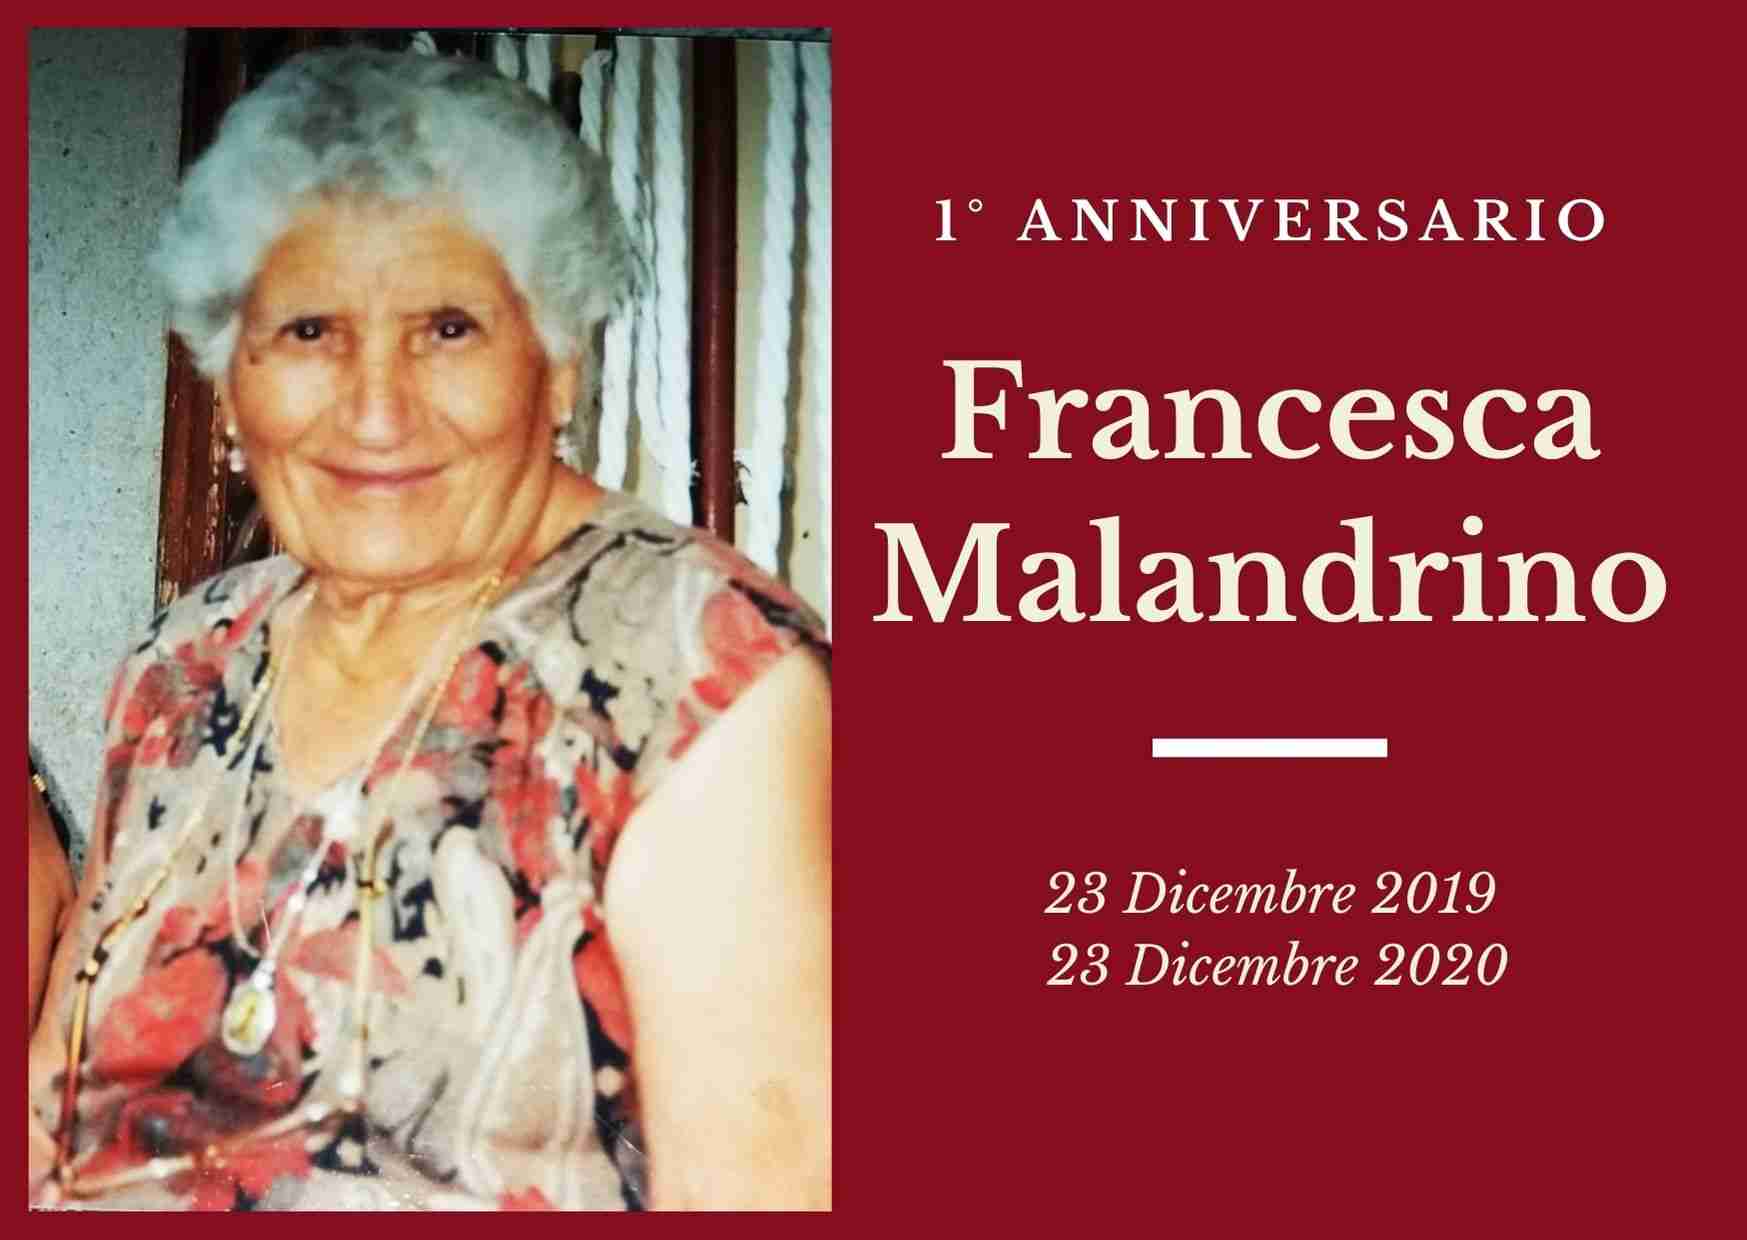 Necrologio: ricorre oggi il 1° anniversario di Francesca Malandrino